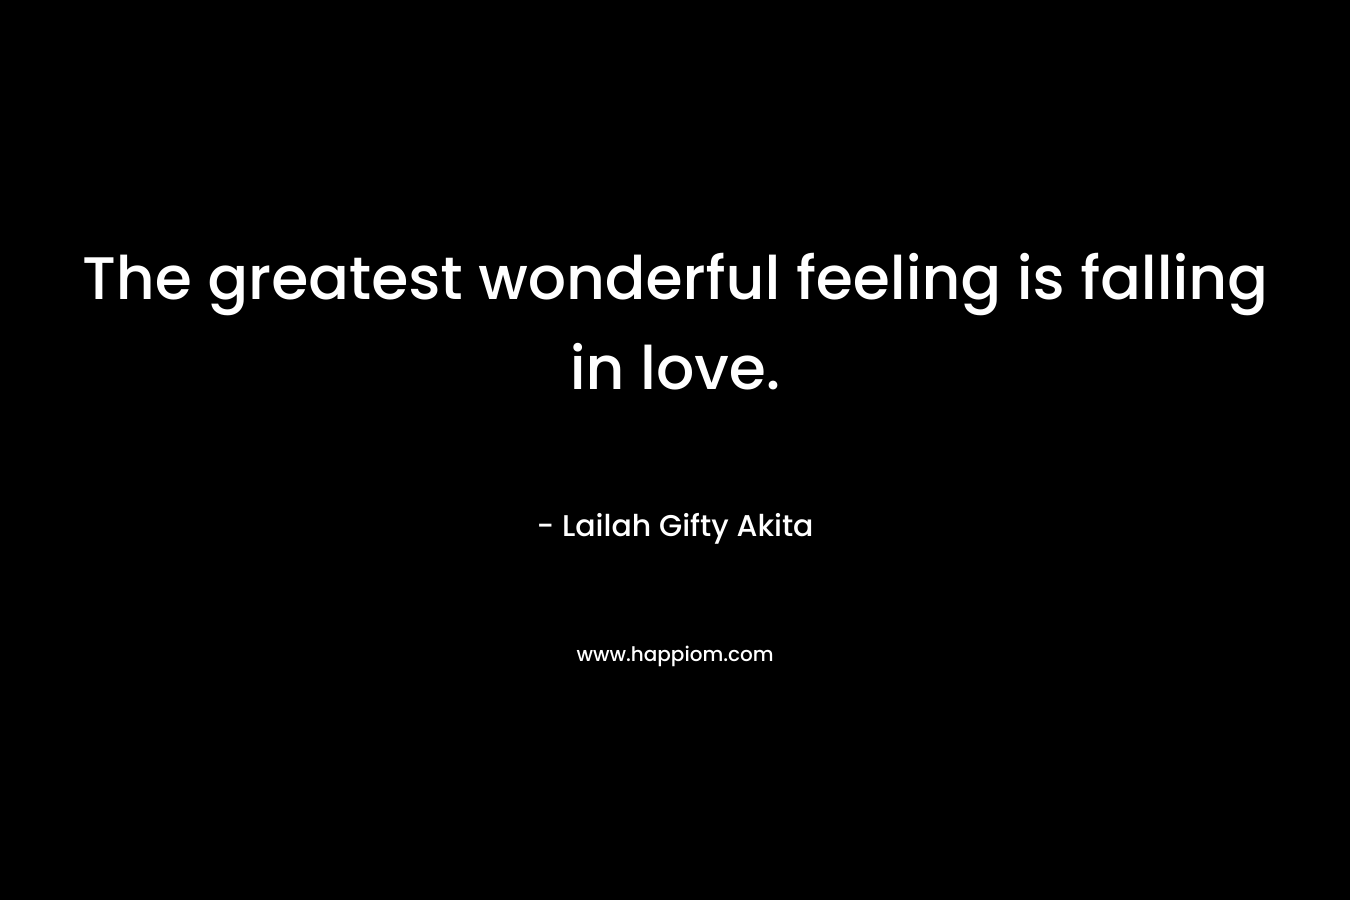 The greatest wonderful feeling is falling in love.